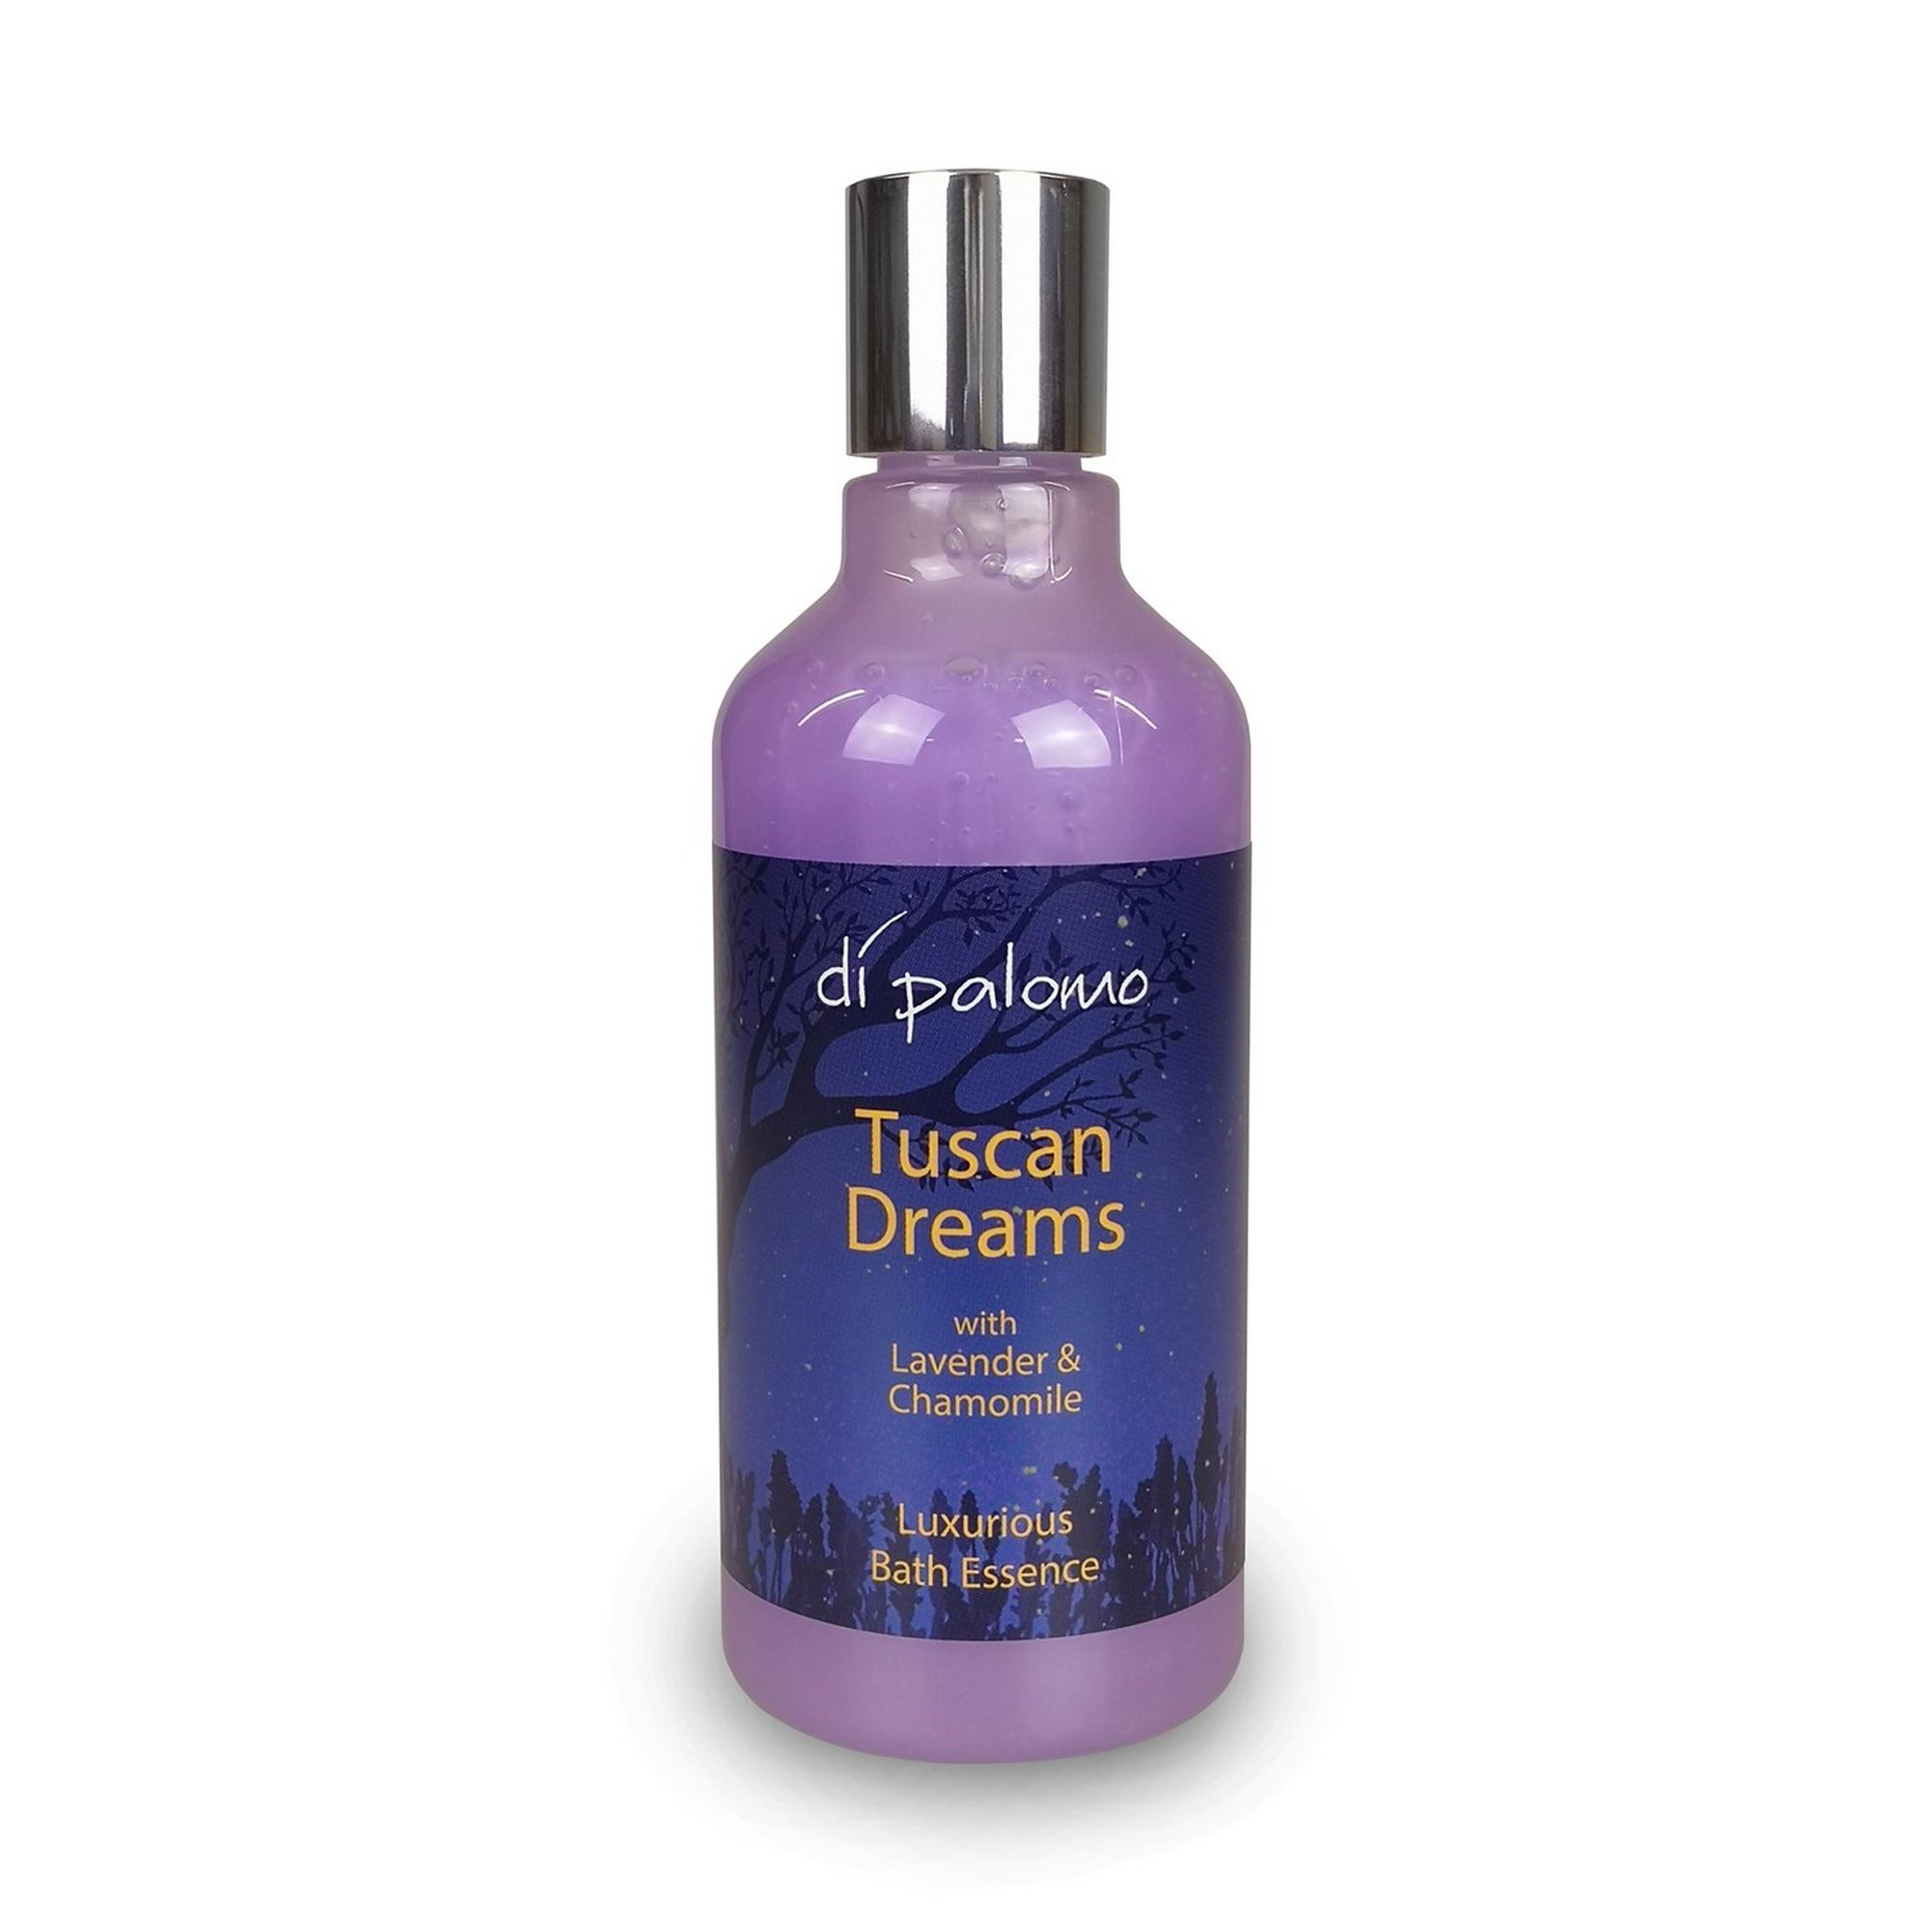 Tuscan Dreams Bath Essence